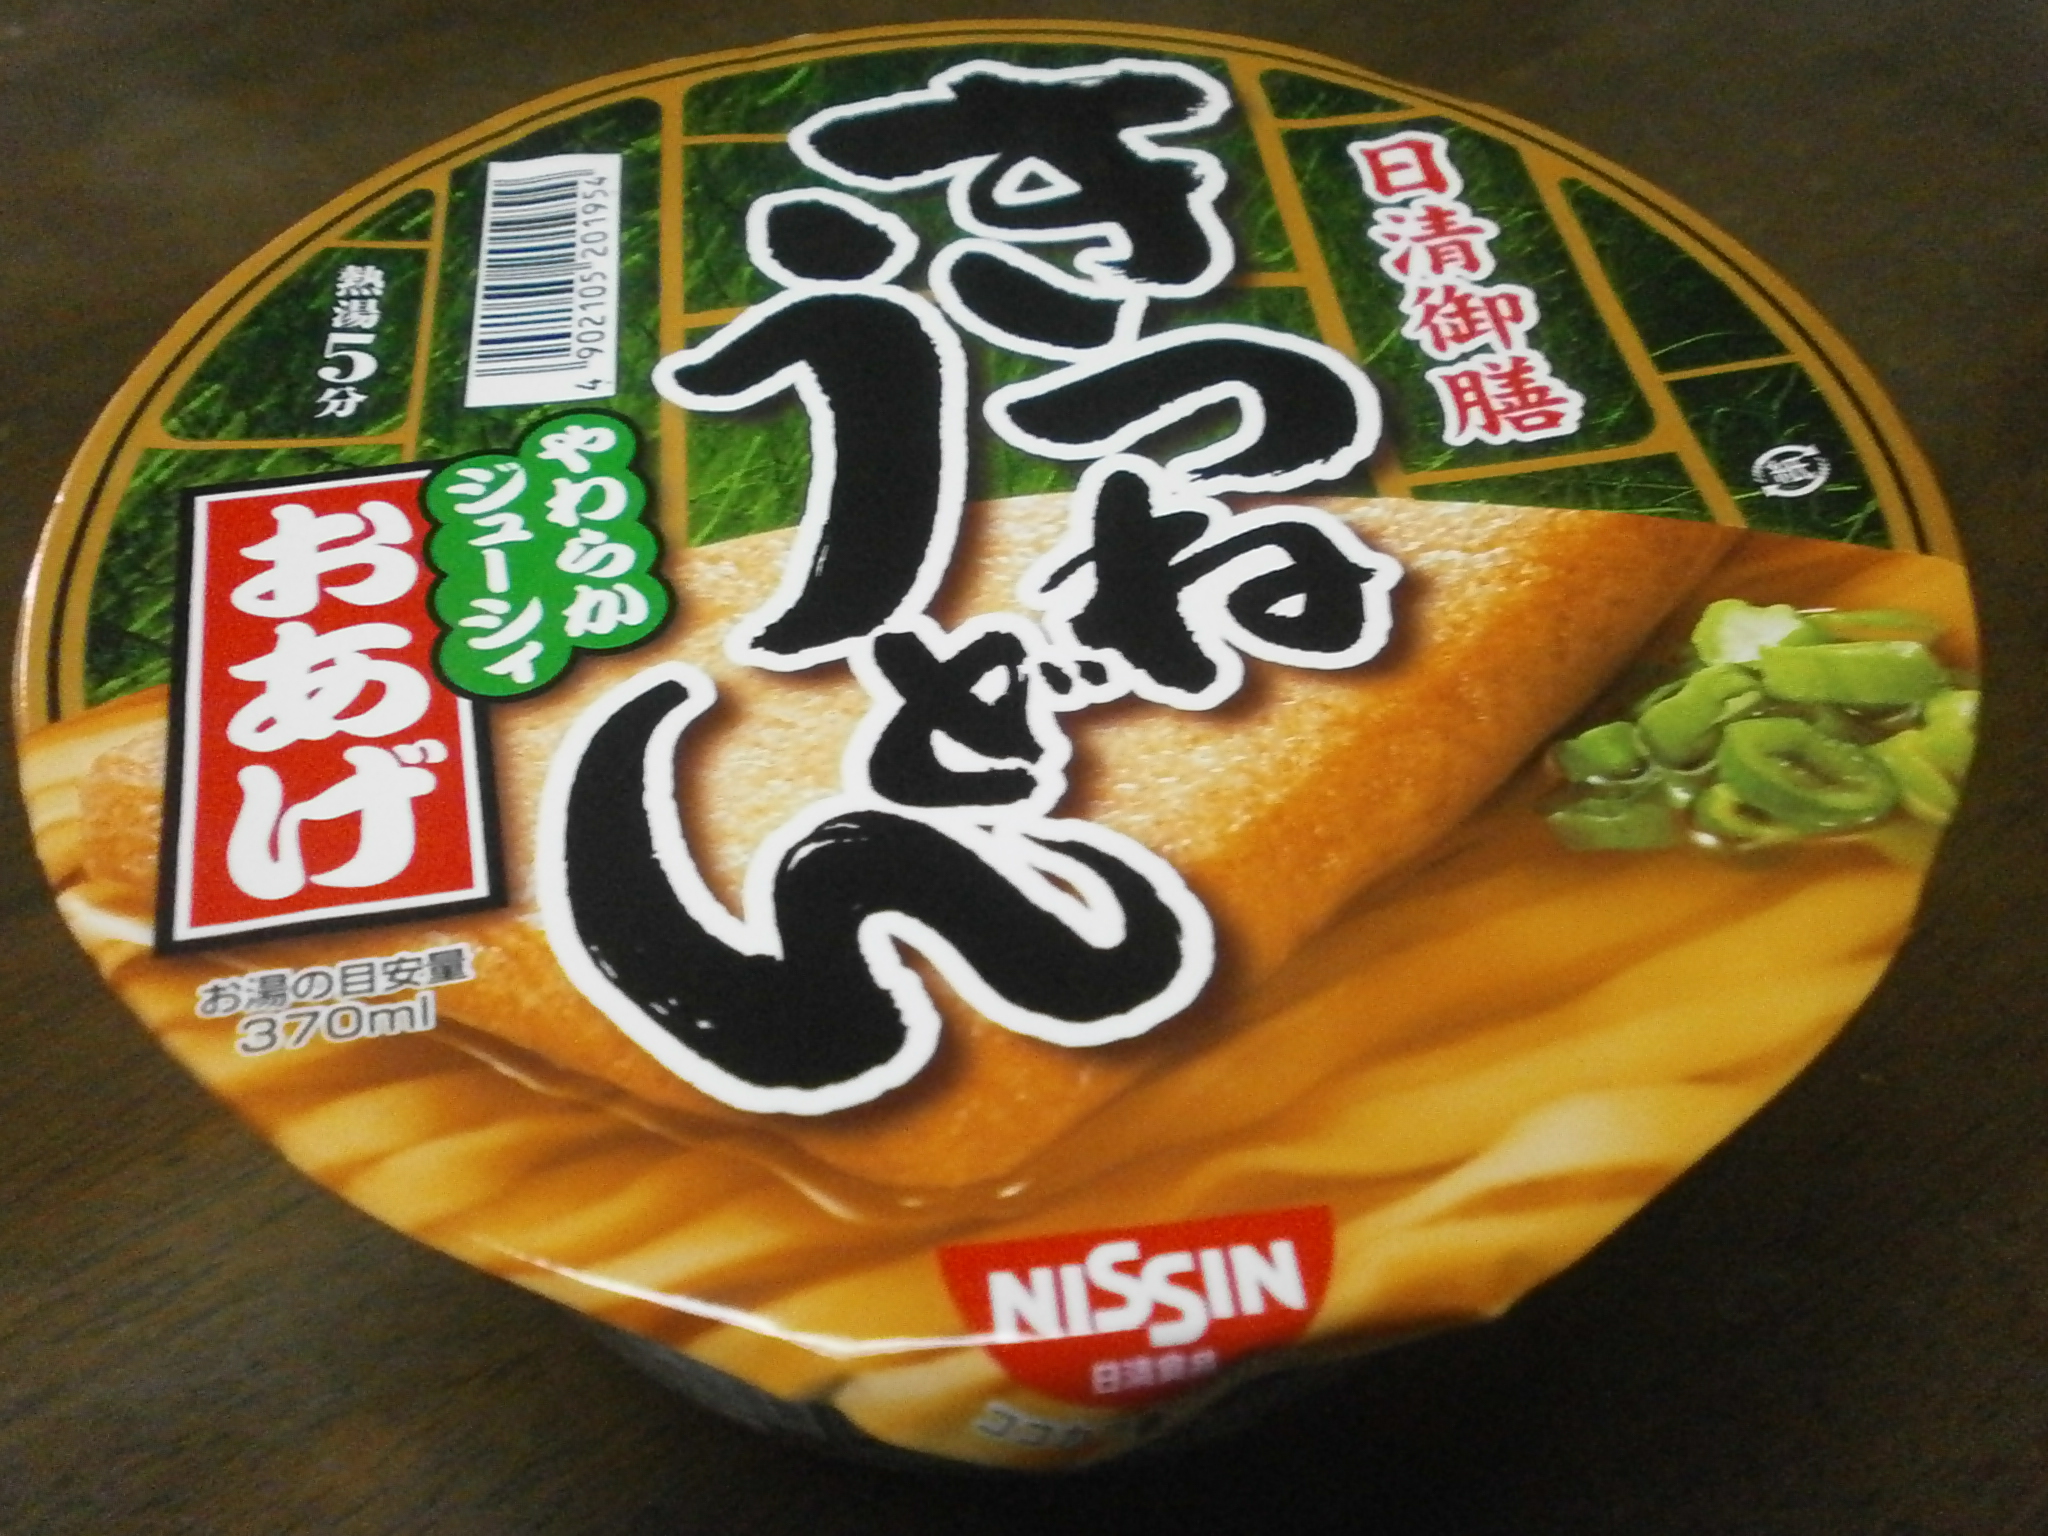 Quelle haute teneur en calories? Soupe de nouilles? Kitsune Udon?